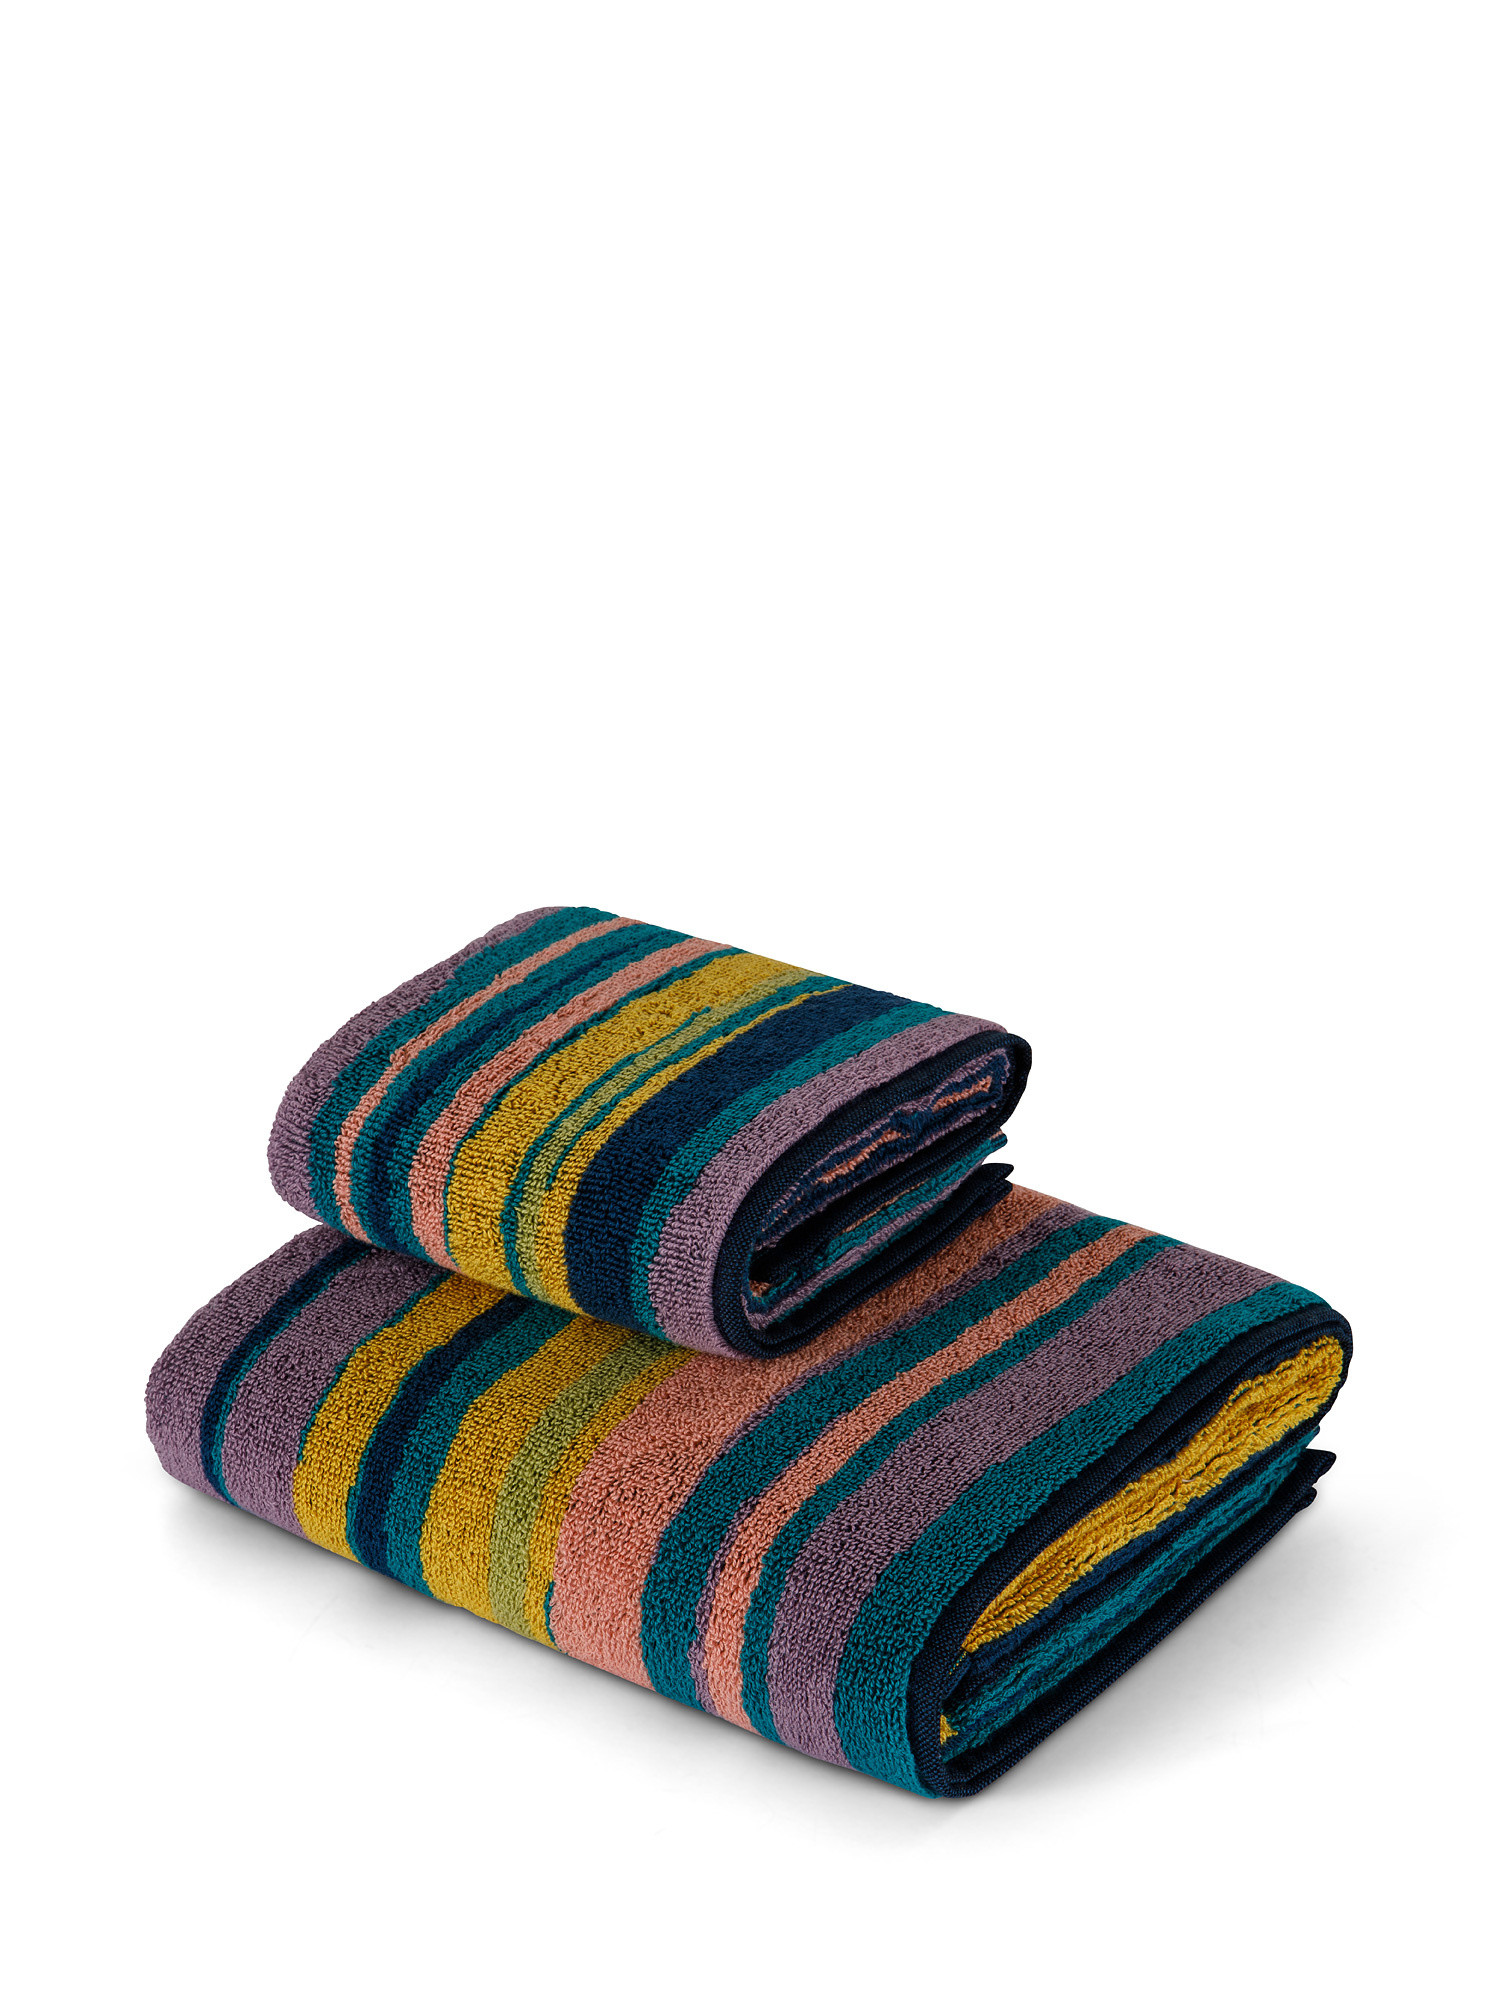 Asciugamano cotone jacquard motivo righe camouflage, Multicolor, large